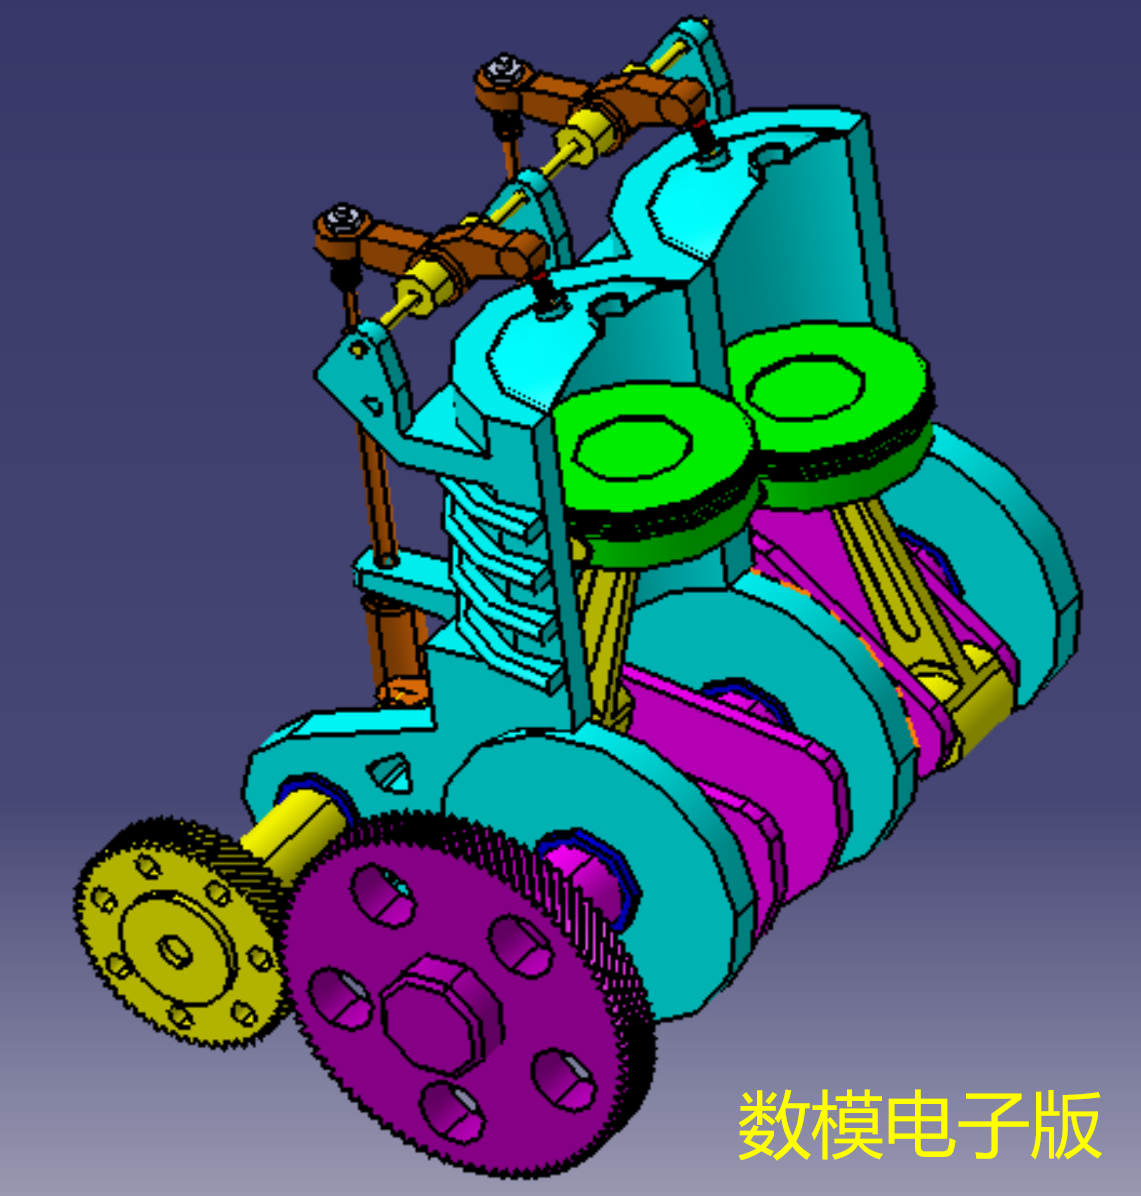 2双气缸发动机剖开三维几何数模型3D打印素材活塞曲轴连杆凸轮stp